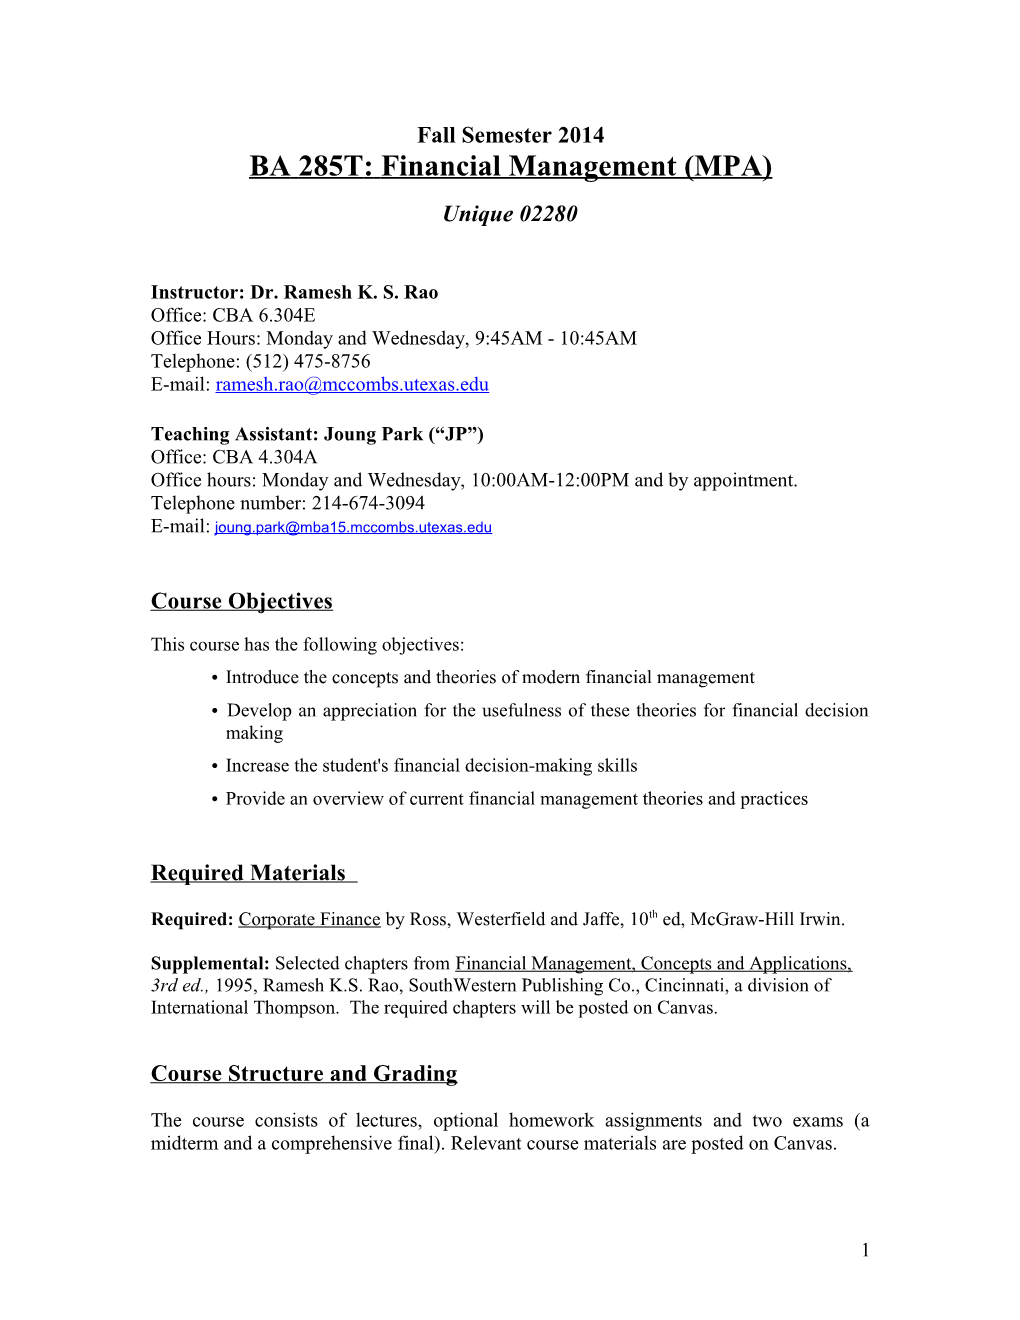 BA 285T - Fianancial Management MPA - Rao